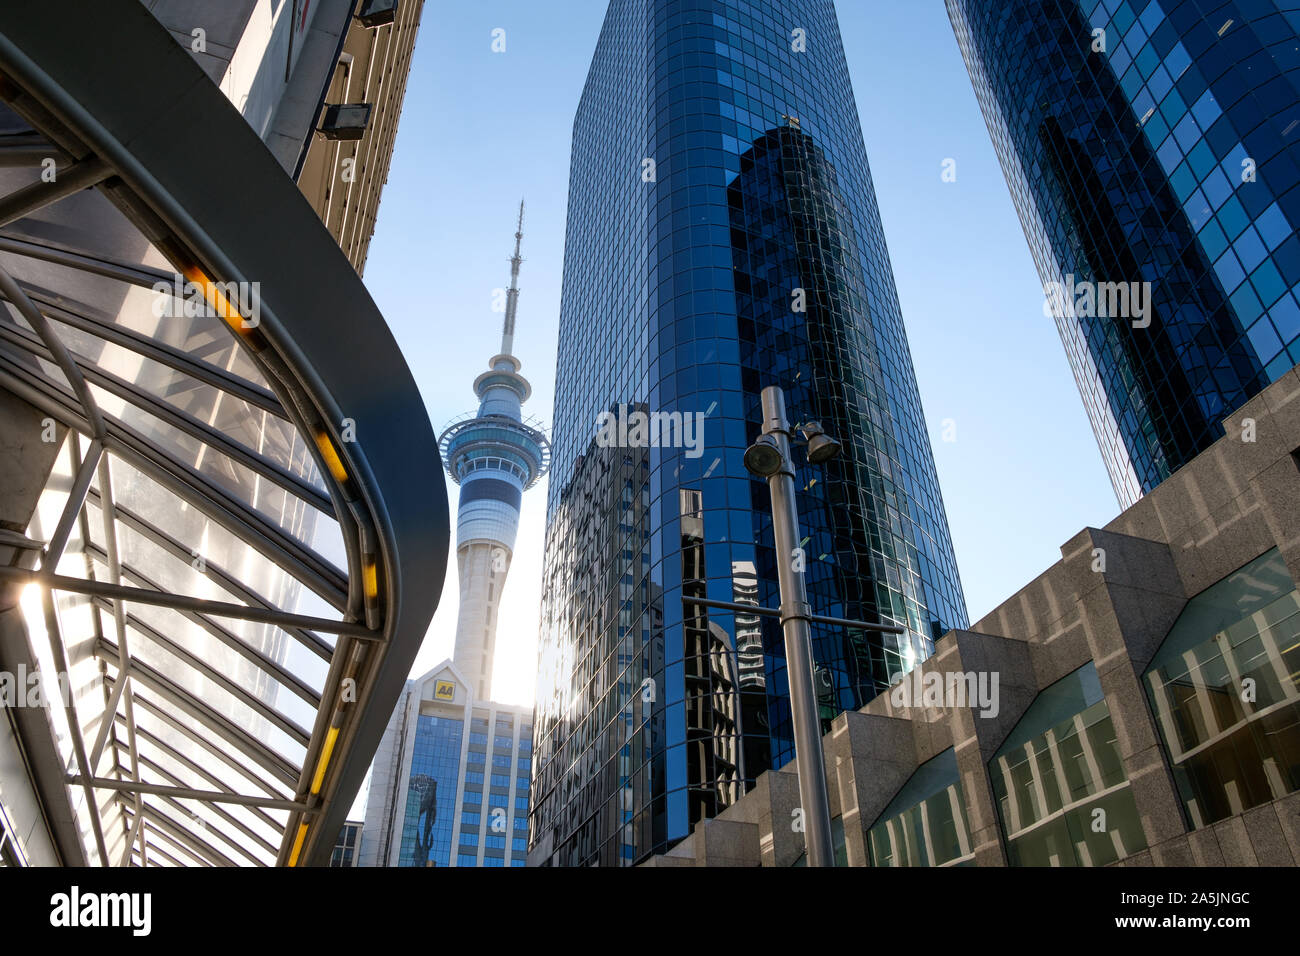 Auckland, Neuseeland - 15. April 2019: Central Business District in Auckland. Sky Tower zwischen Wolkenkratzern. Stockfoto